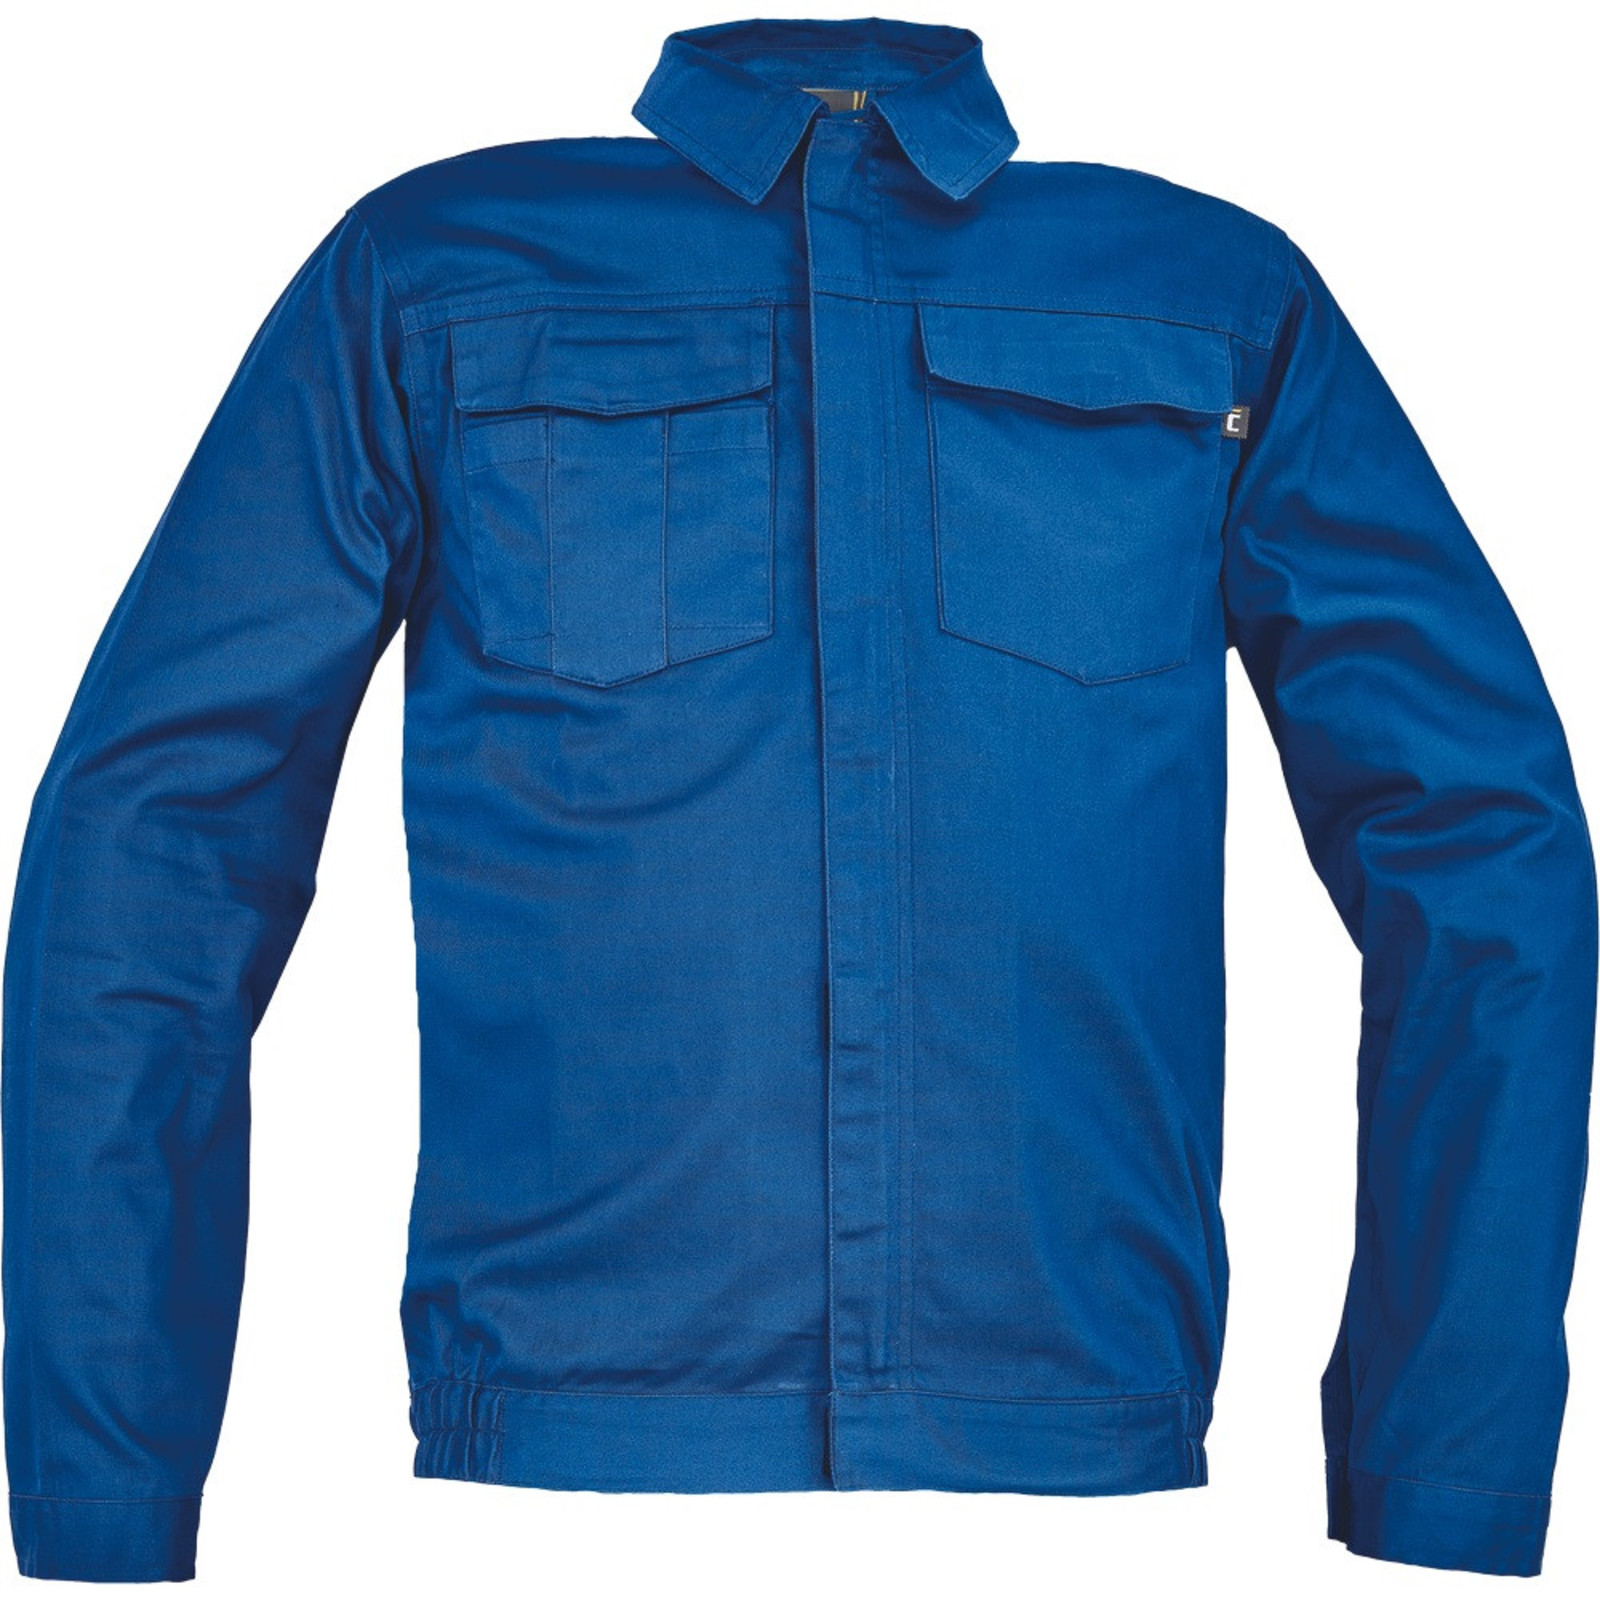 Pánska ľahká pracovná bunda Cerva Ciudades Basic Zaragoza - veľkosť: 60, farba: royal blue